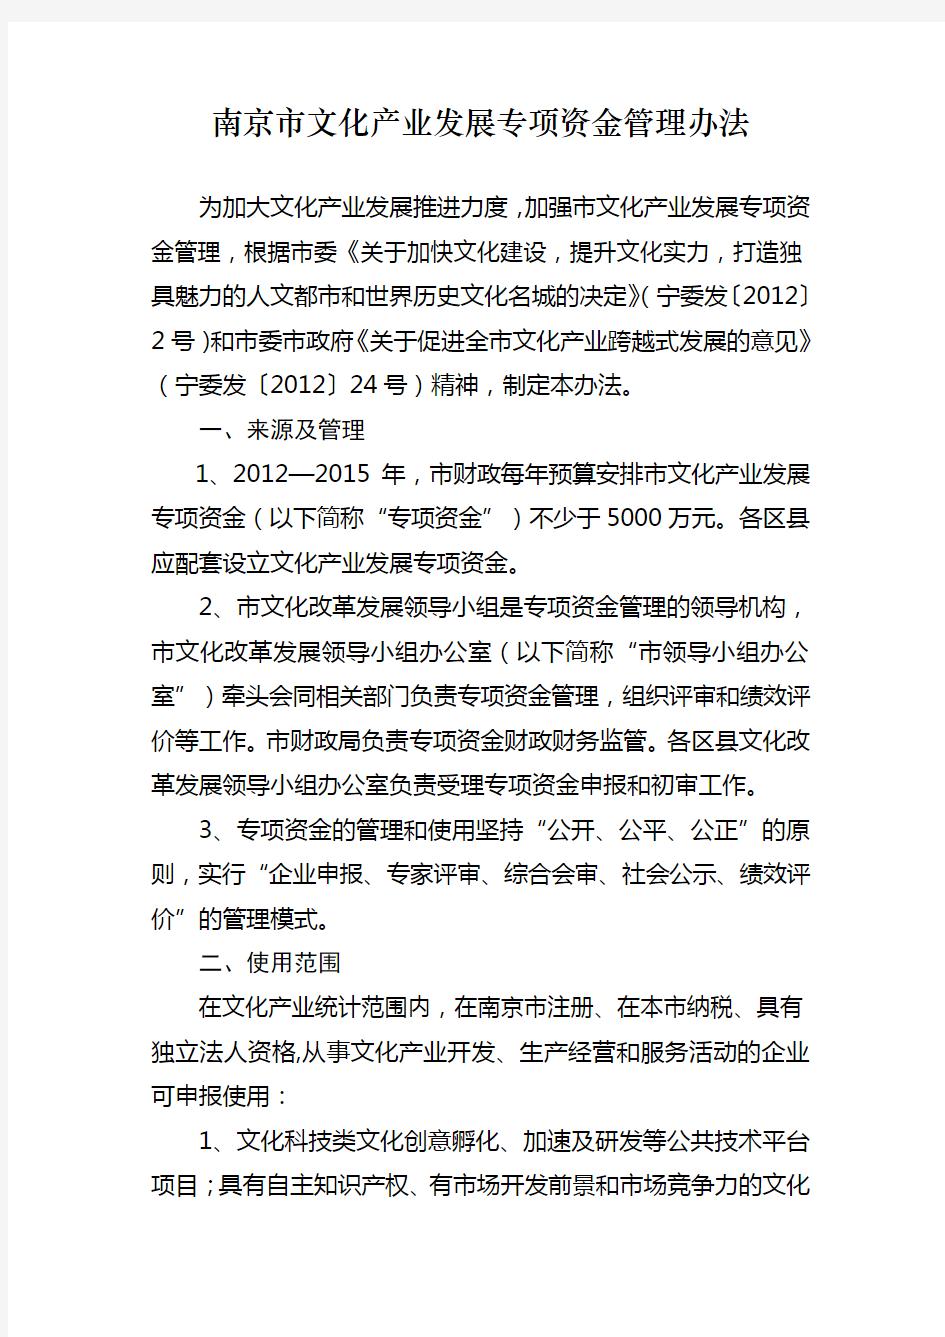 南京文化产业发展专项资金管理办法